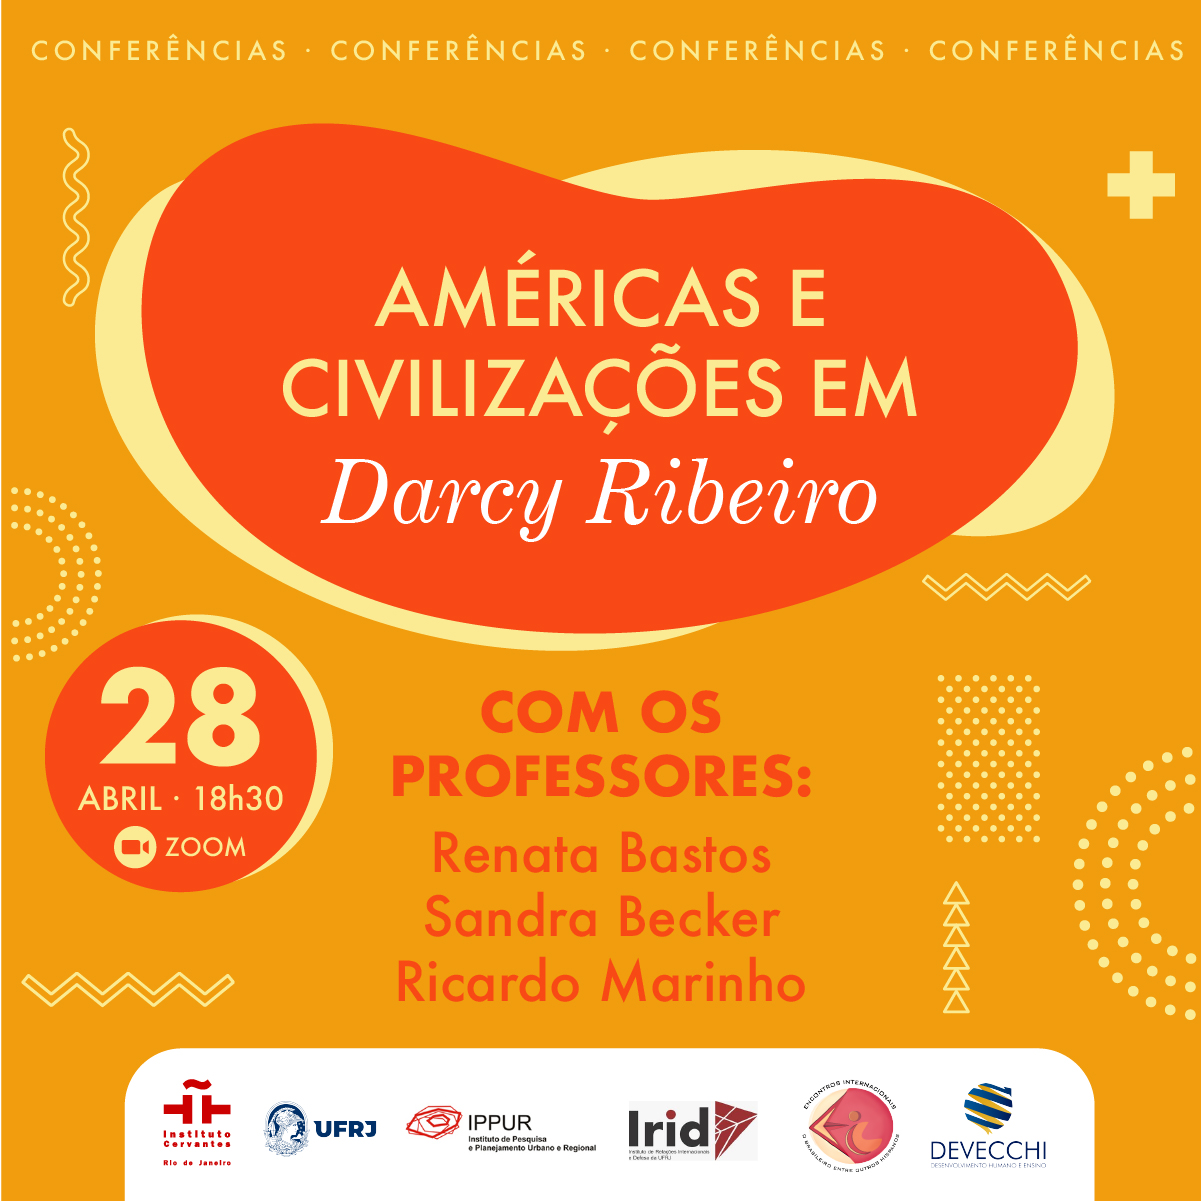 Américas e civilizações em Darcy Ribeiro